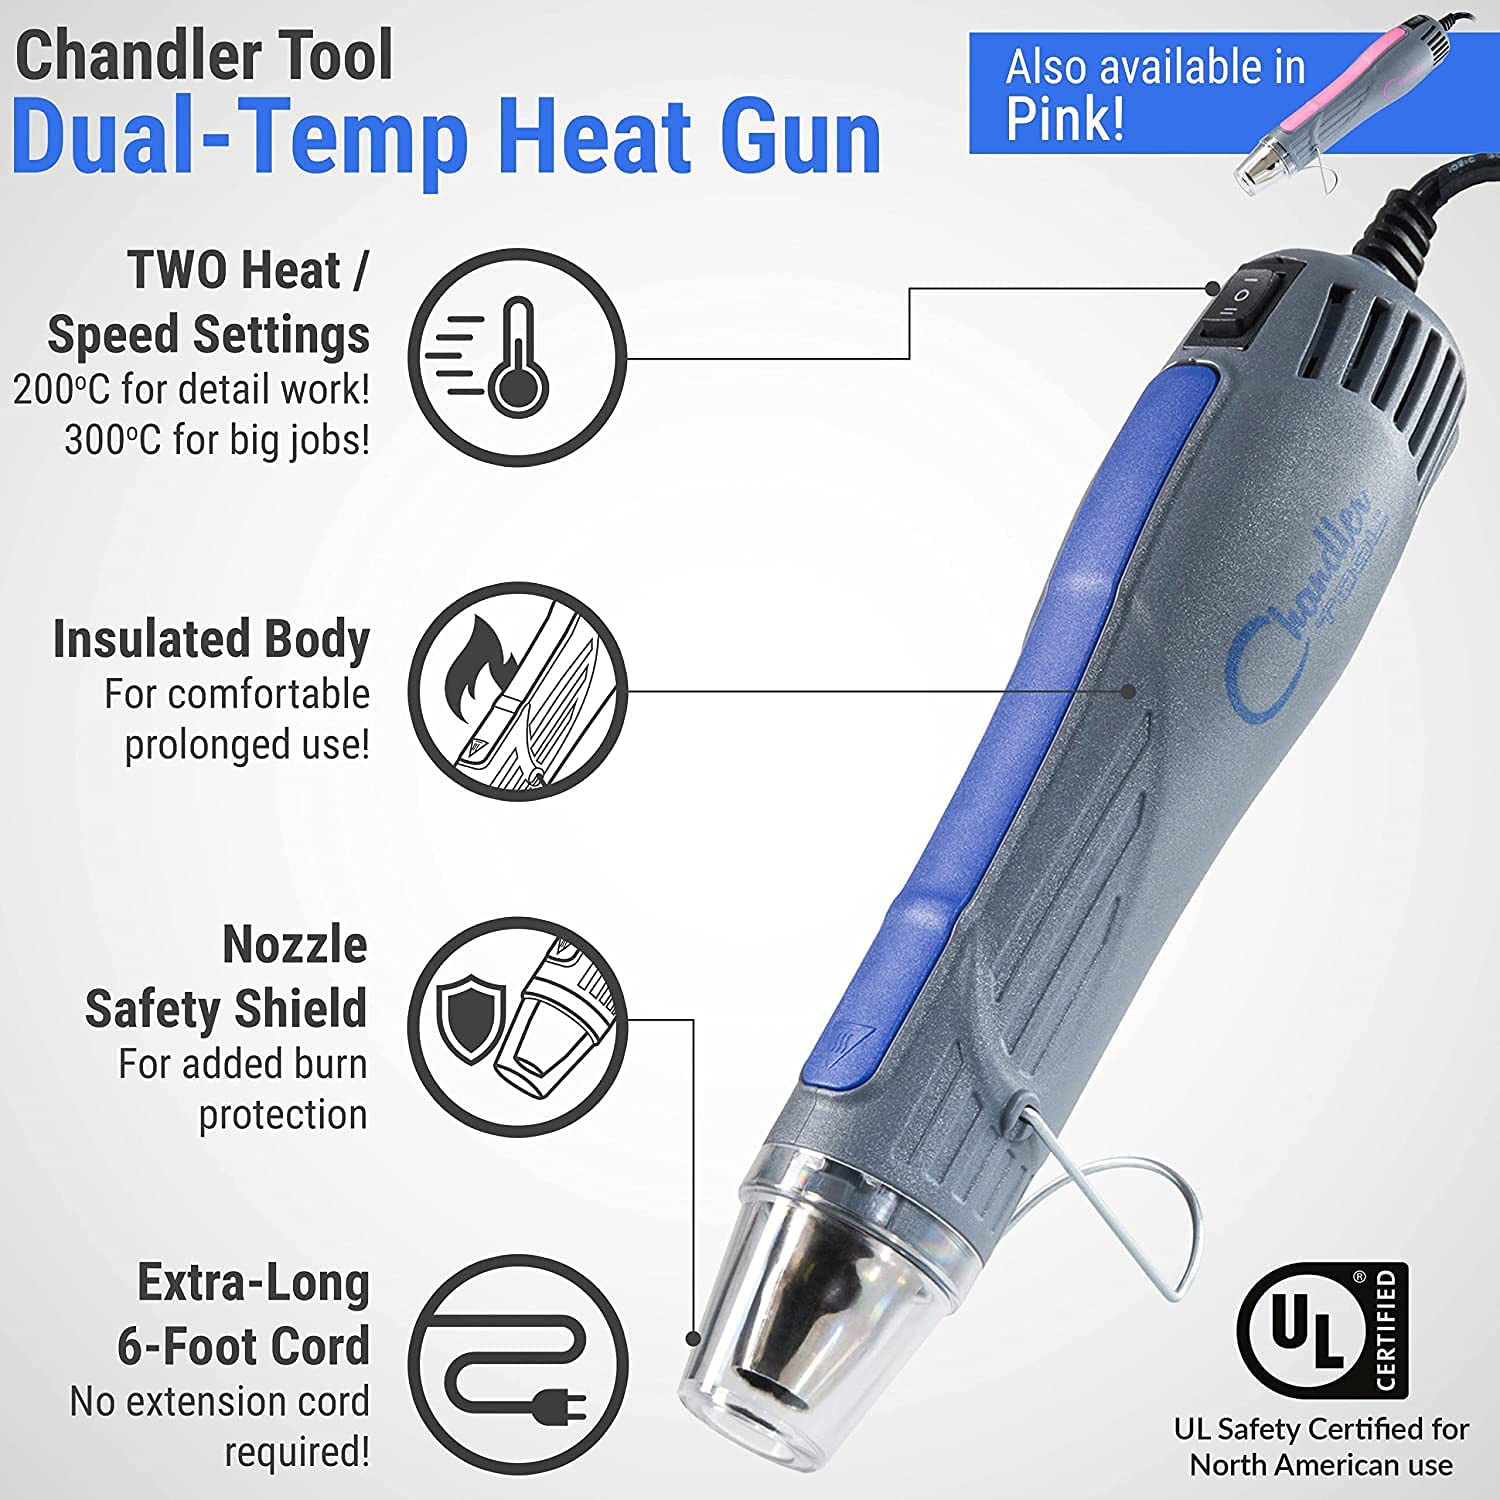 Heat Gun Chandler Tool Dual Temp Hot Air Gun for Crafts, Epoxy Resin, Shrink Wrap, Vinyl, Embossing, Electronics, Phone Repair & DIY (Pink)